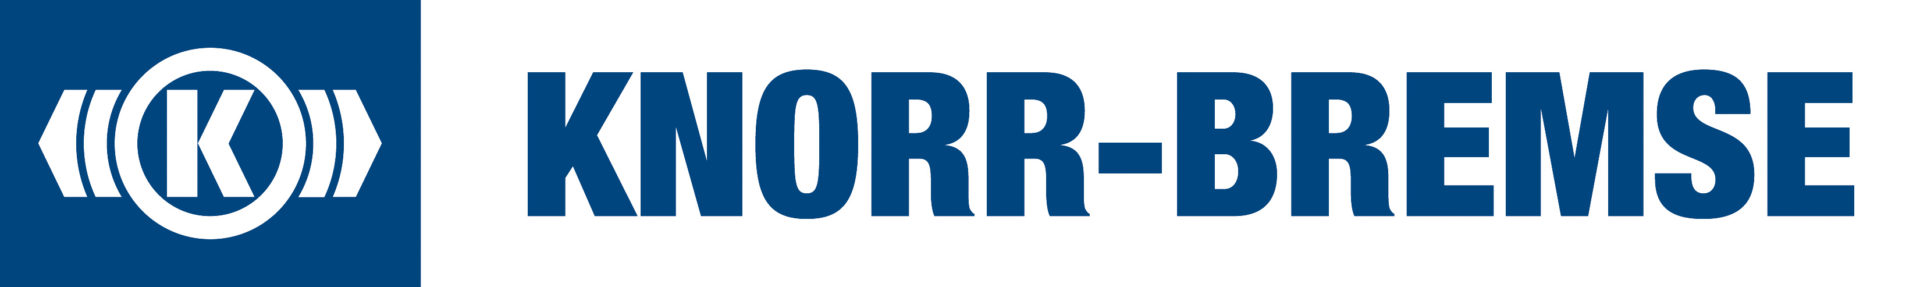 Knorr-Bremse Australia logo